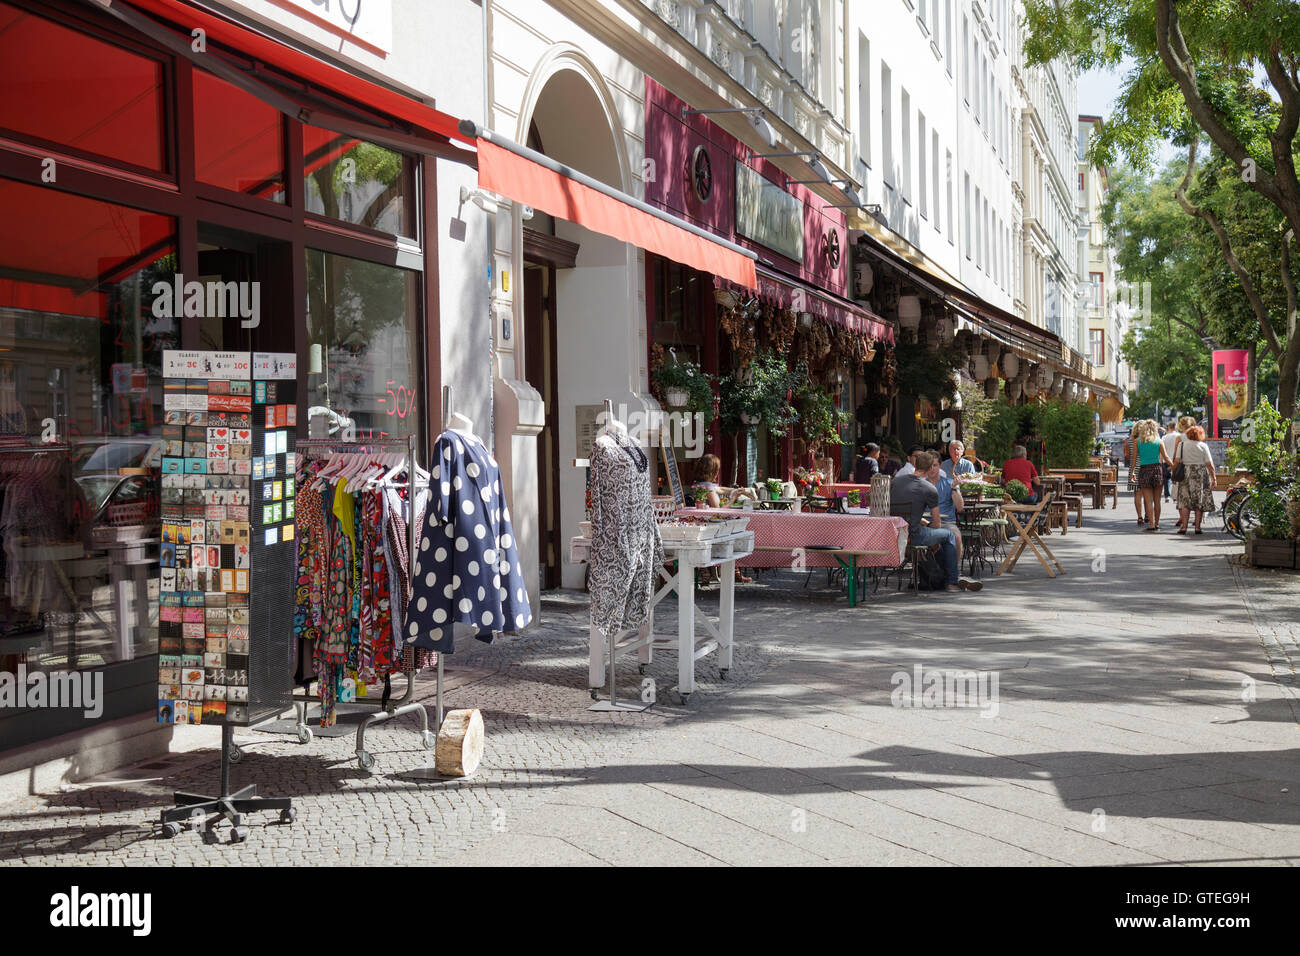 Bergmannstrasse dans Kreuzberg personnes à pied et à l'extérieur de Knofi Feinkost Restaurant avec magasin de vêtements, Berlin, Allemagne Banque D'Images